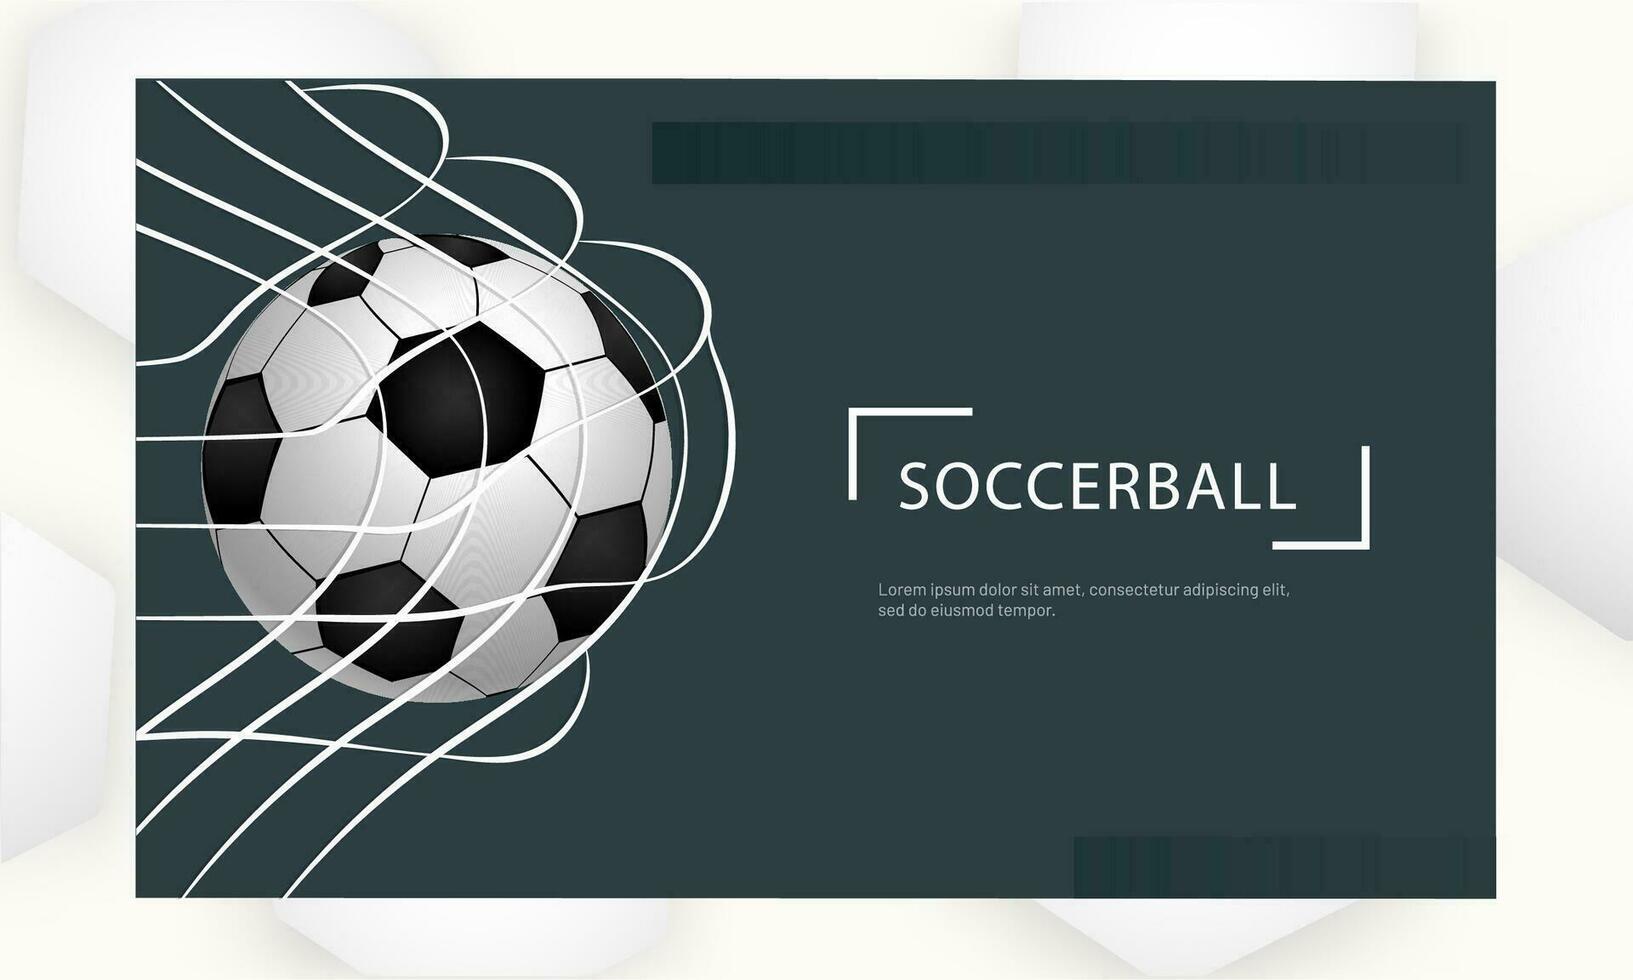 voetbal toernooi landen bladzijde of website banier ontwerp met hoogtepunt Amerikaans voetbal doel in netto. vector